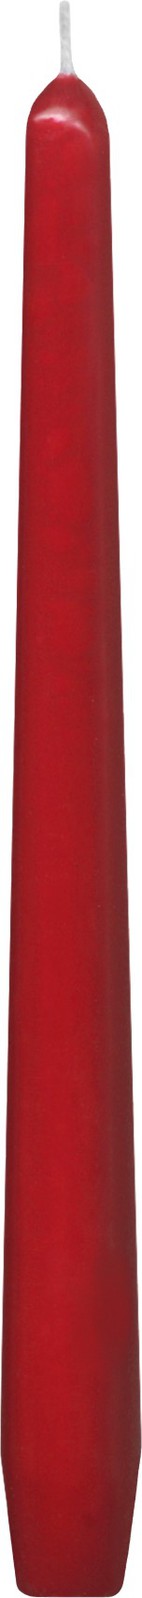 Svíčka kónic 240mm červená 10ks